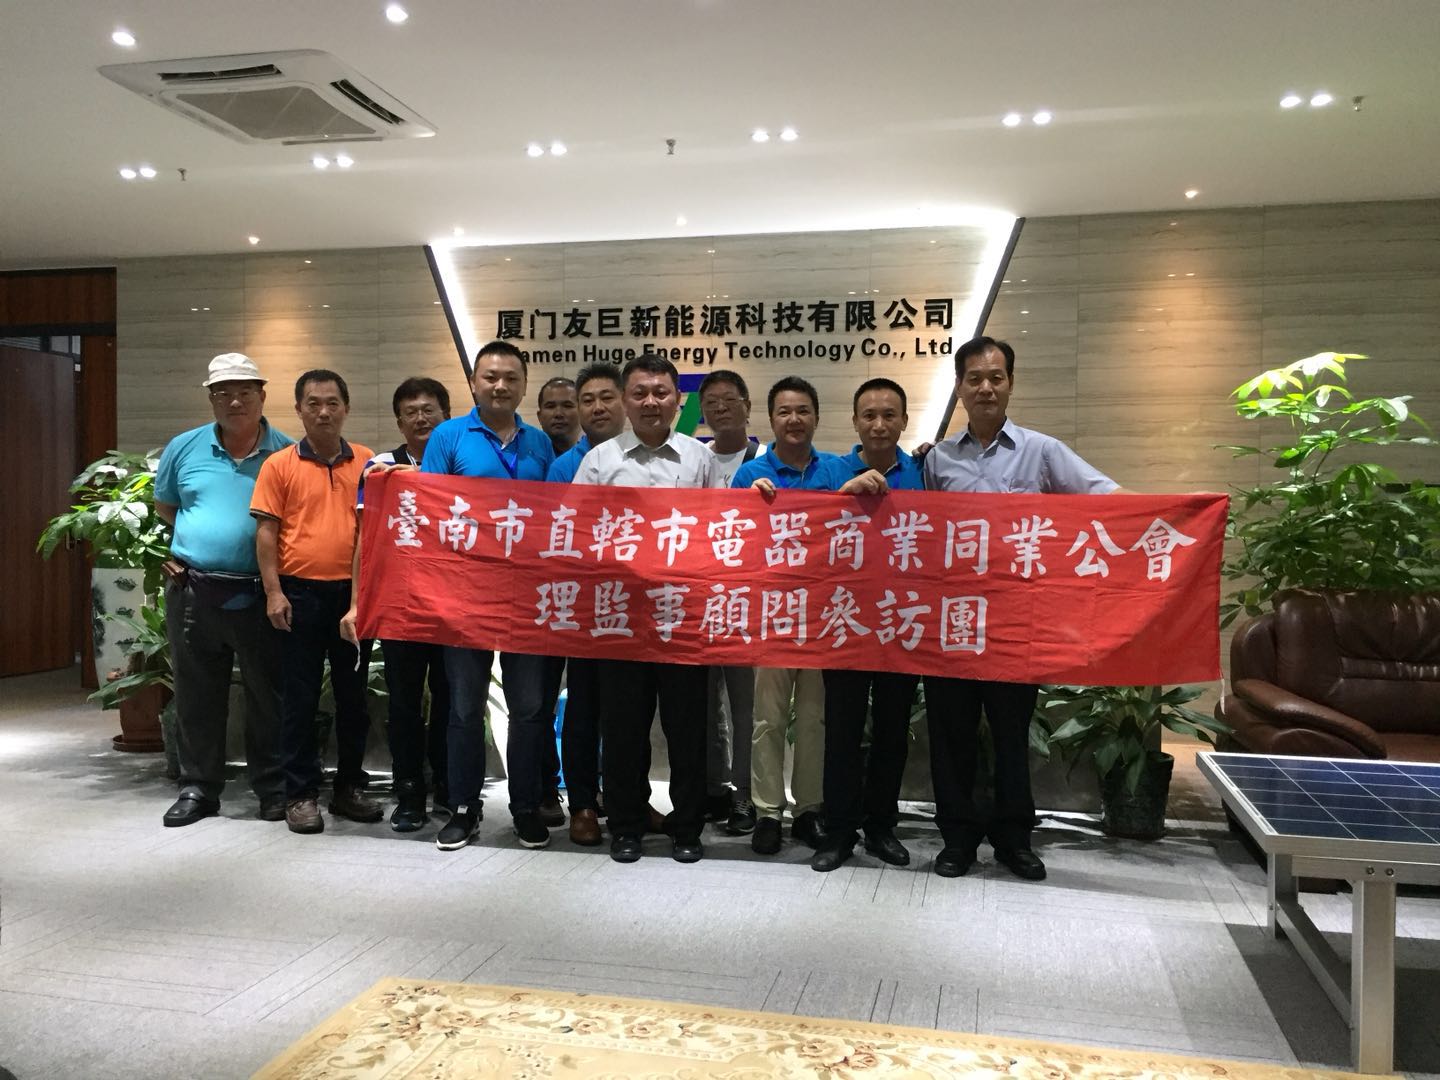 Тайвань Тайнан цахилгаан хэрэгслийн бизнесийн холбоо, Тайвань хотын ногоон эрчим хүчний хүрээлэн буй орчныг хамгаалах хорооны удирдагчид айлчилж байна